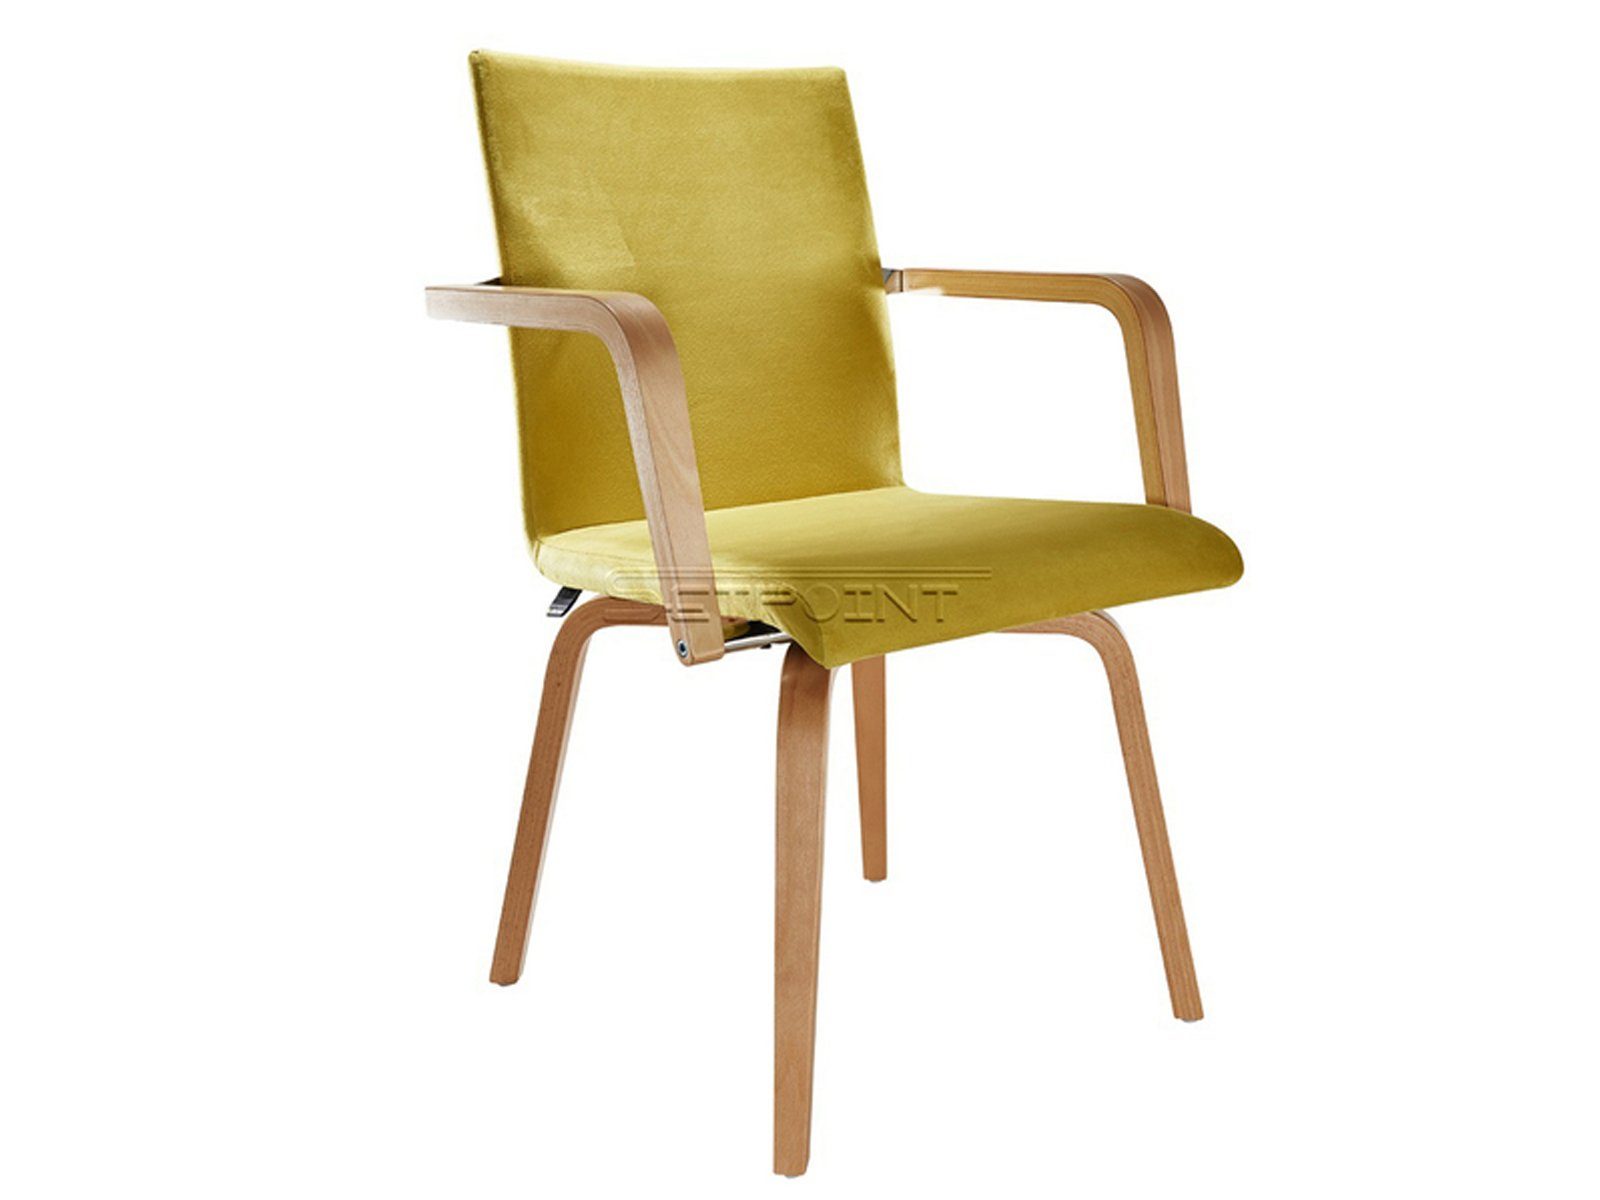 Mauser Sitzkultur Armlehnstuhl, ergonomischer Senioren-stuhl mit Armlehnen, Besucherstuhl Stoff Grün